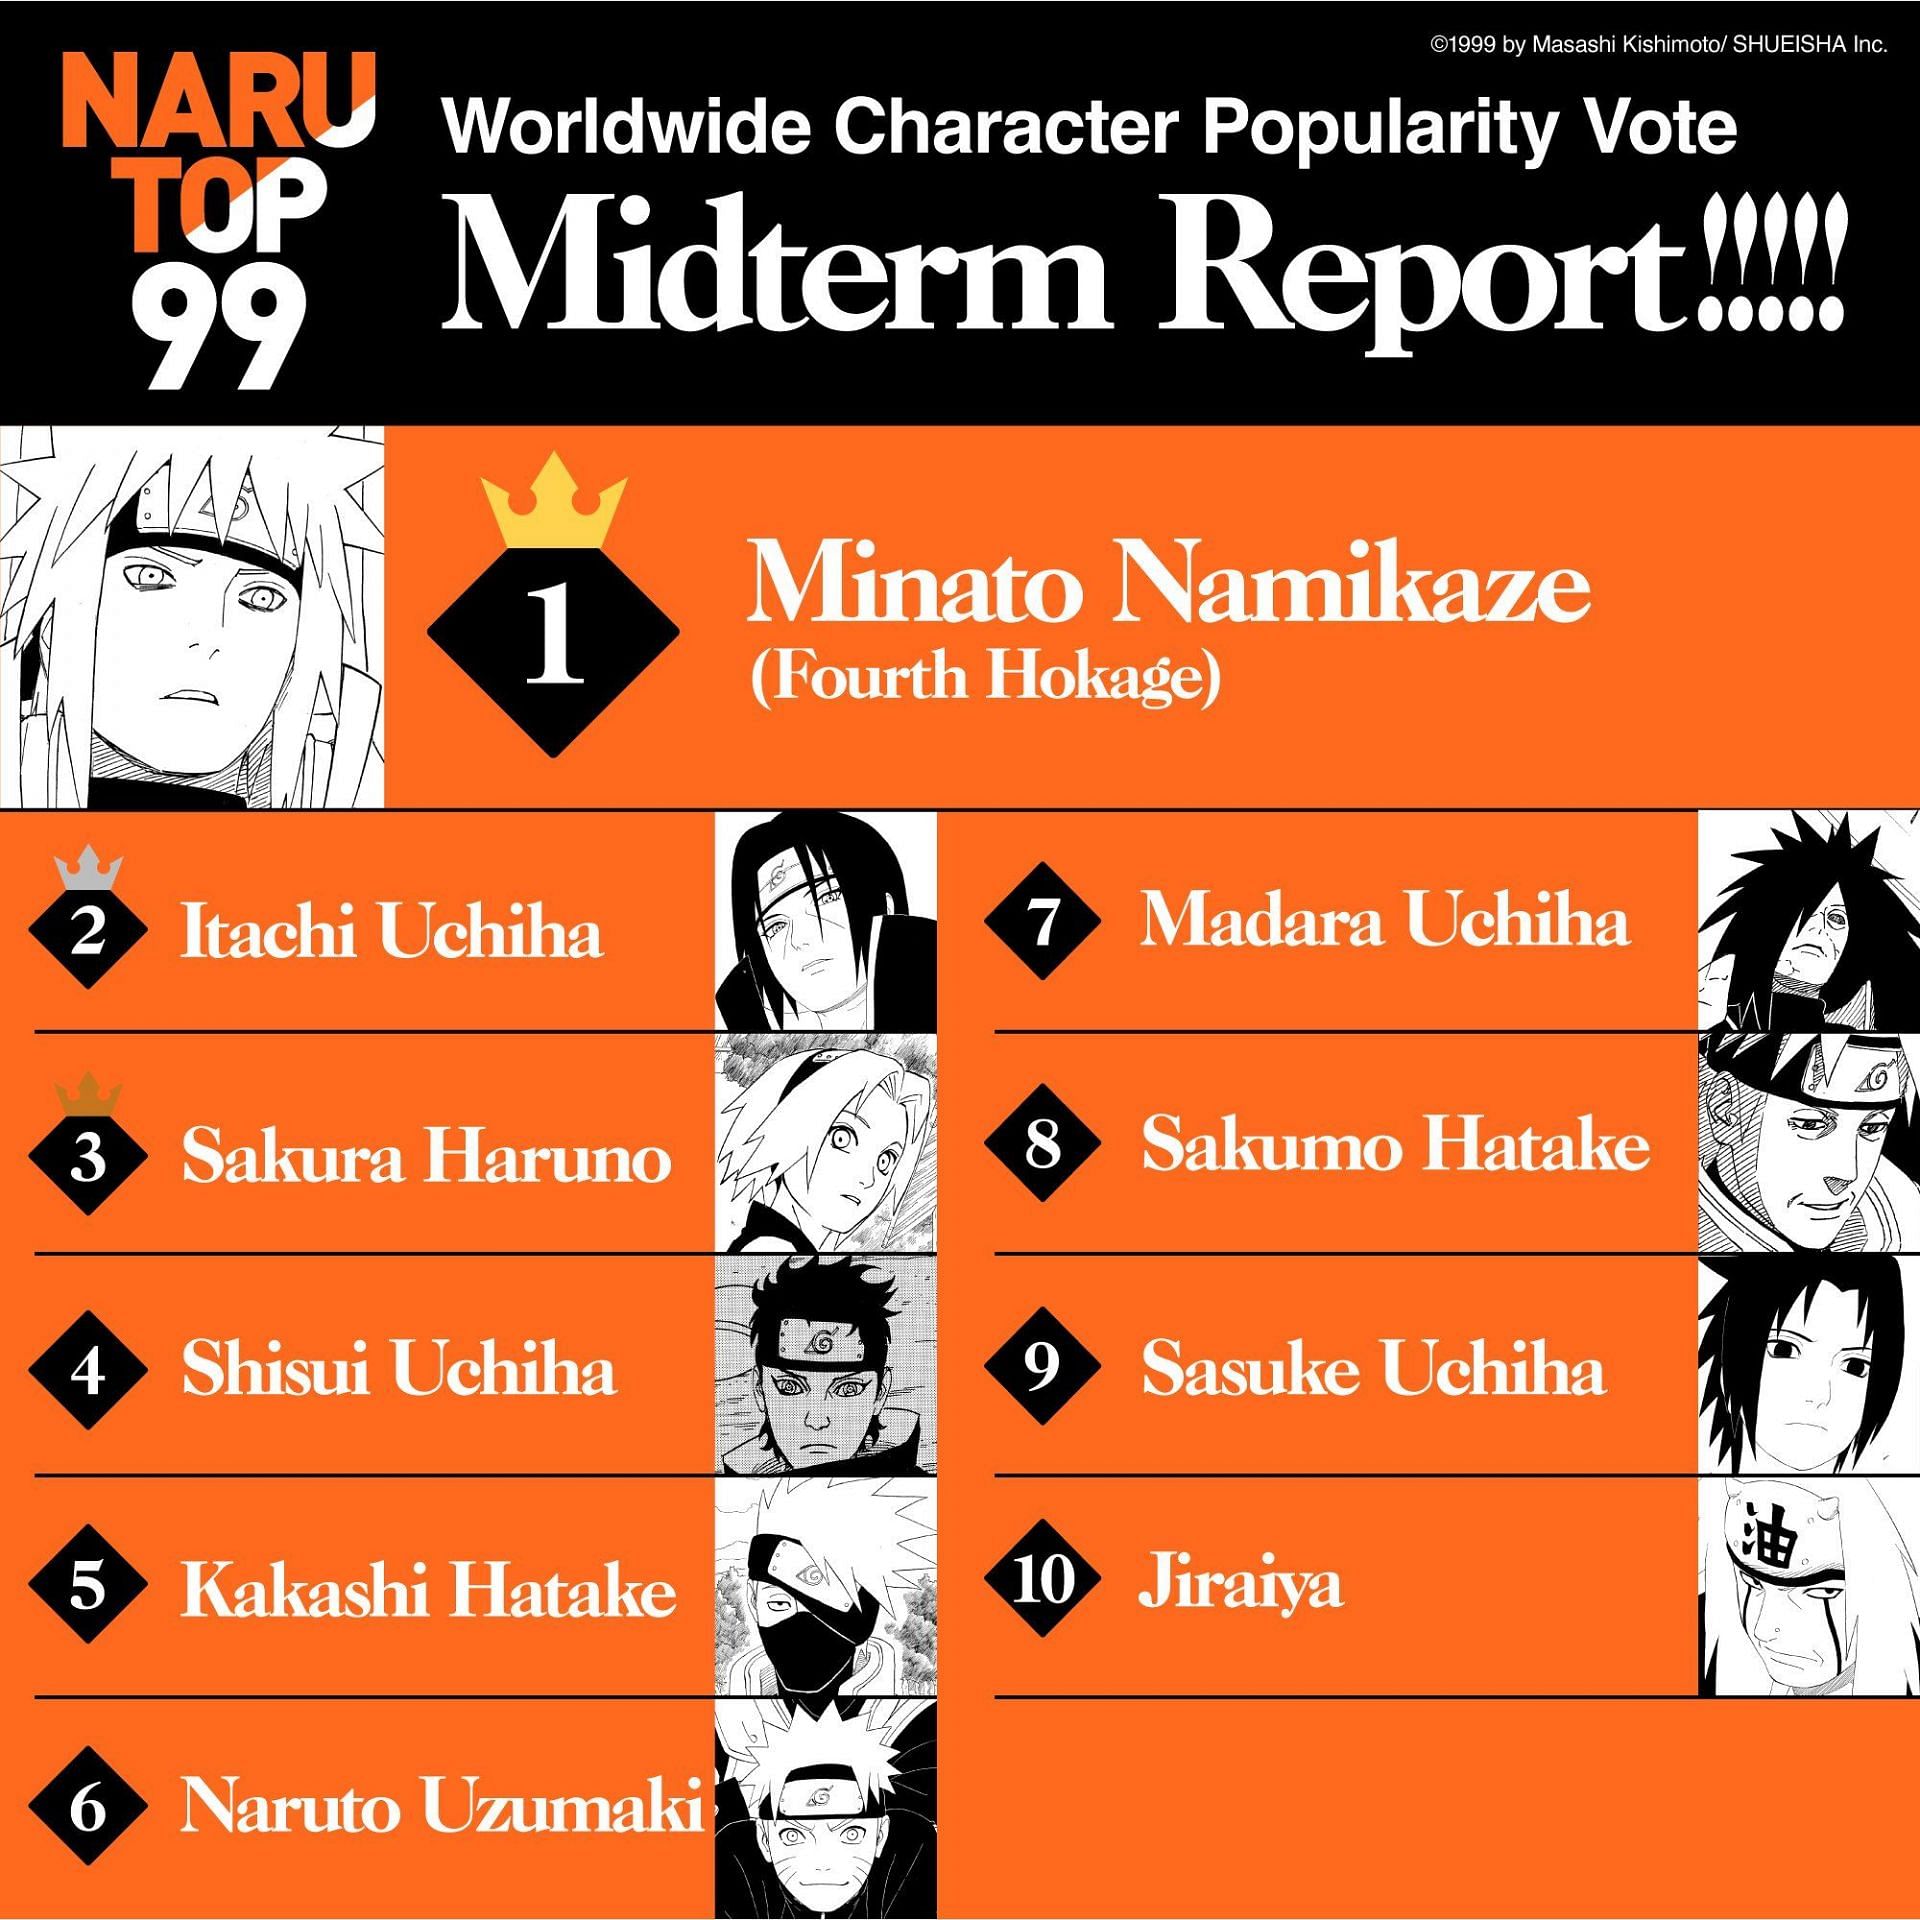 The Narutop99 poll midterm results (Image via Masashi Kishimoto/Shueisha)